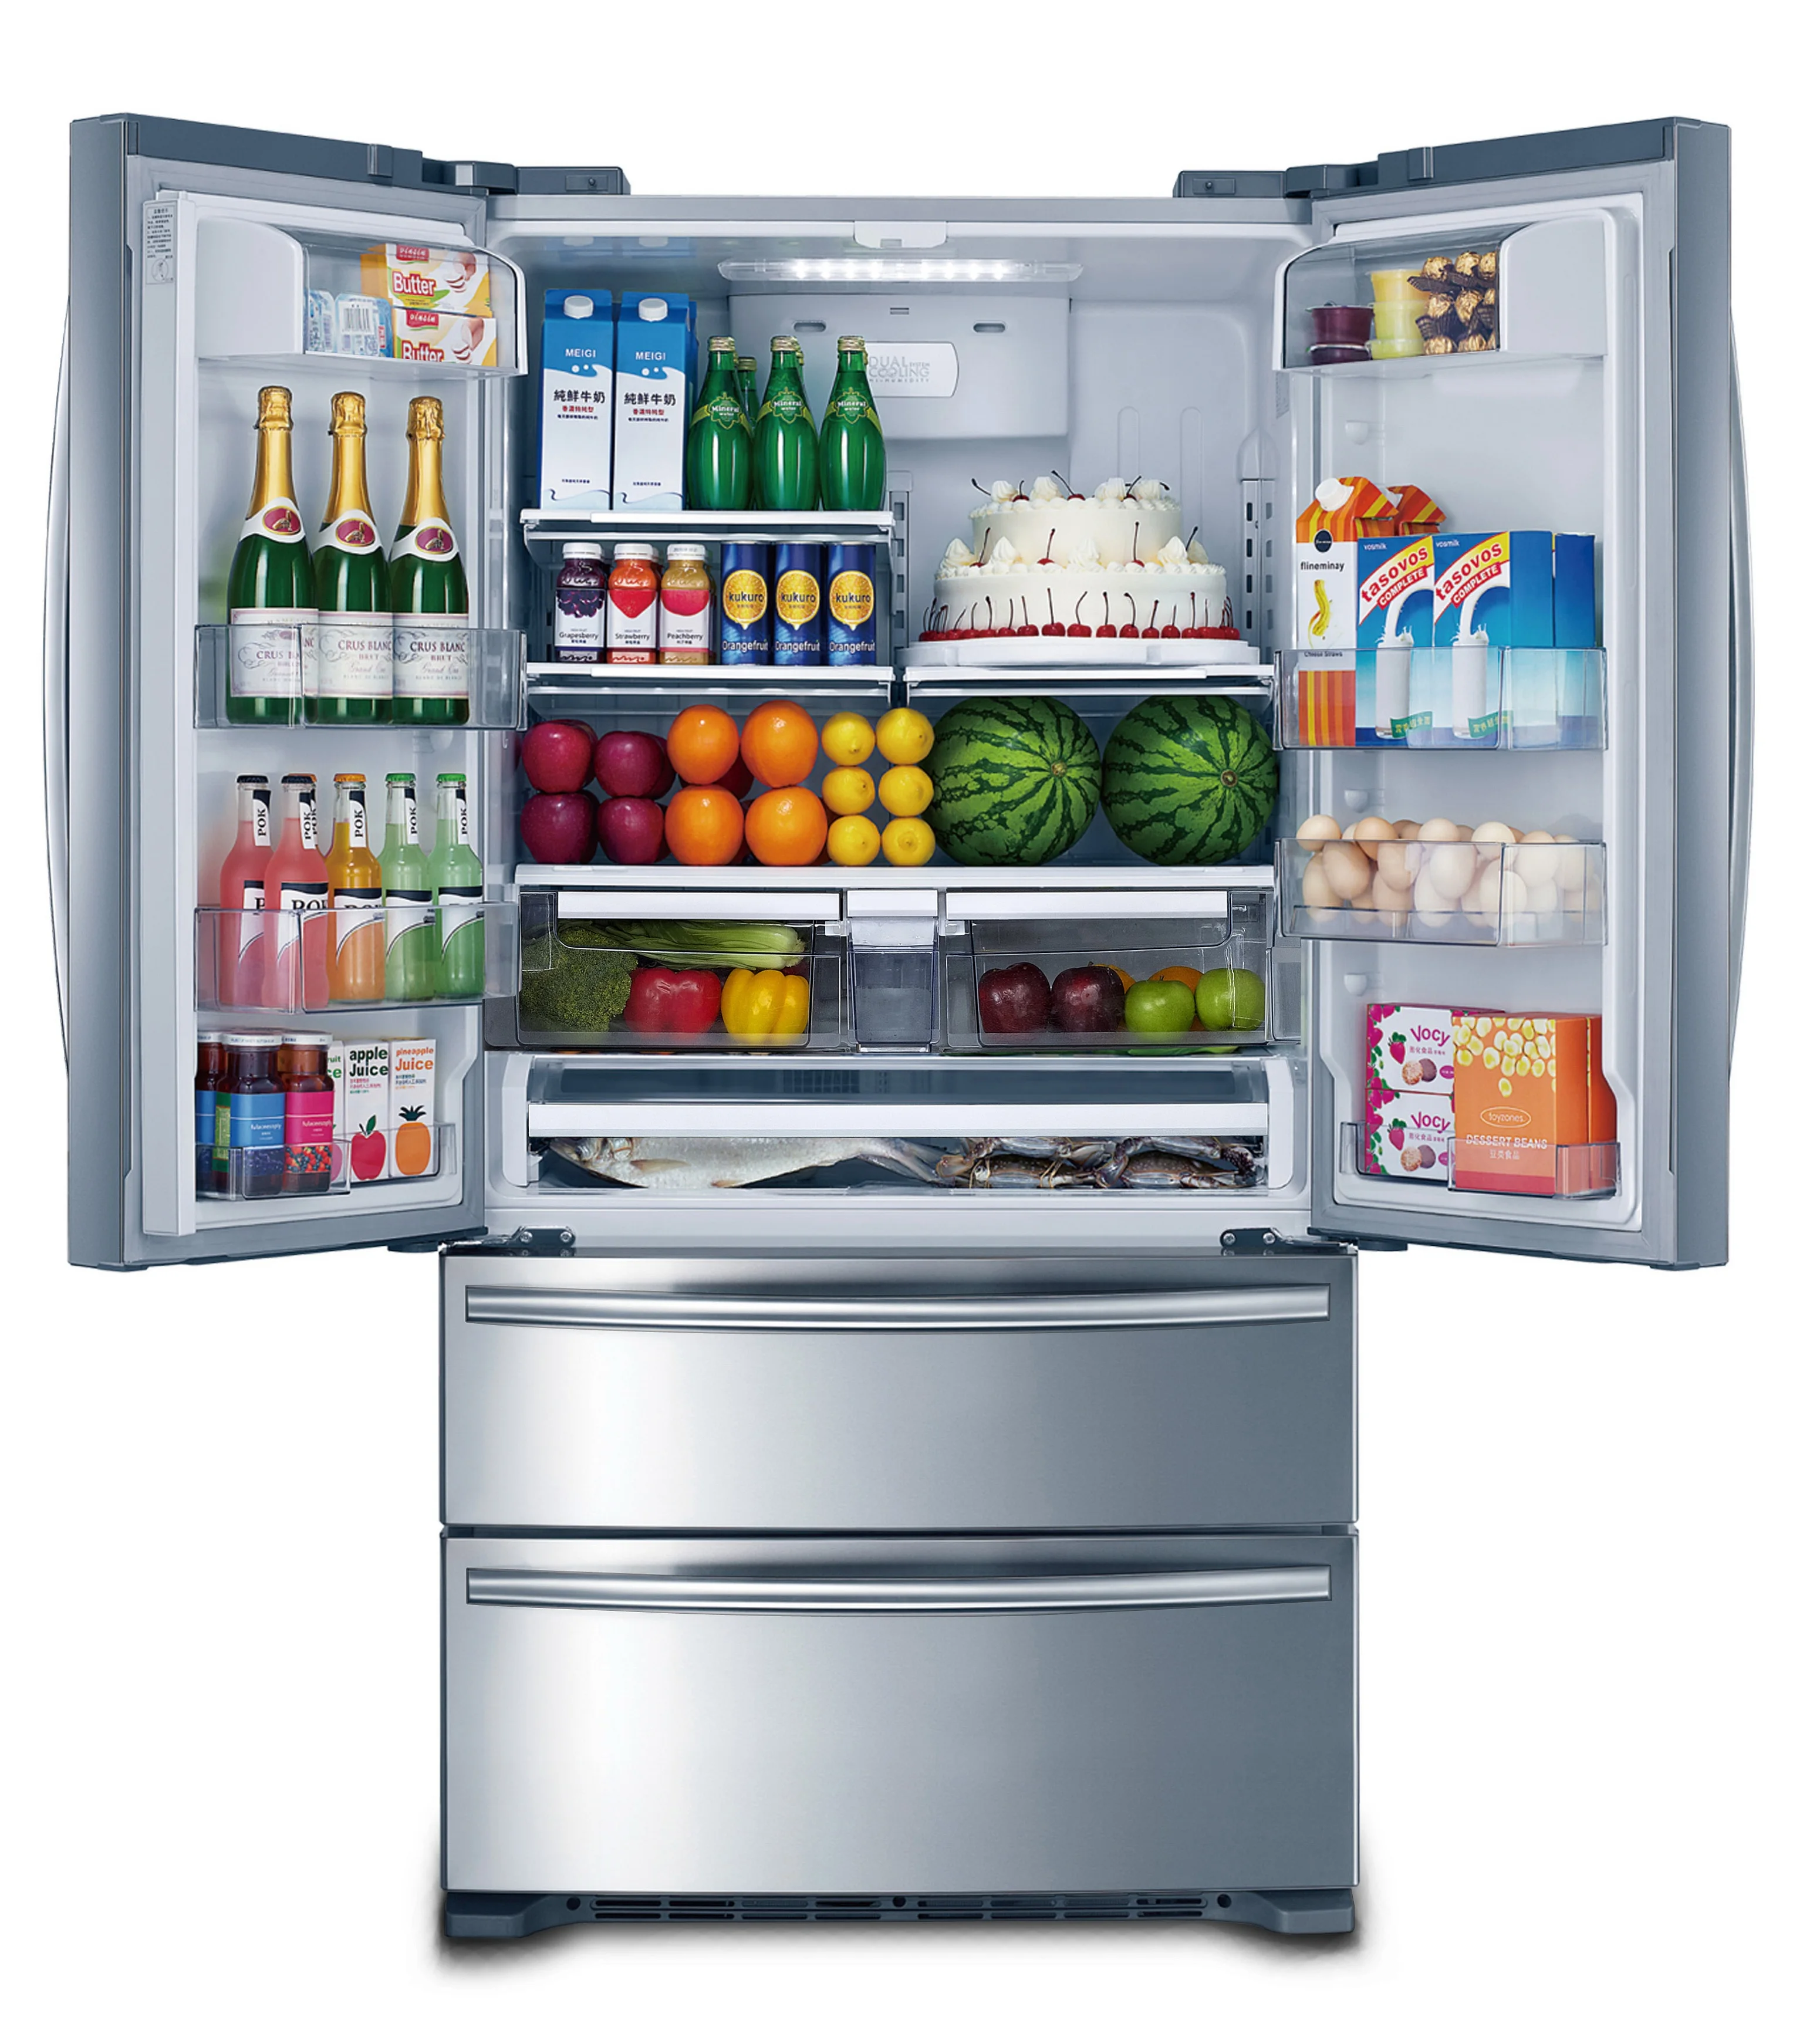 Купить холодильник тагил. Холодильник Freezer Refrigerator. Холодильник трехкамерный Hyundai cm4045fix total no Frost, French Door, нержавеющая сталь. Холодильник Hi hcd020601w. Система ноу Фрост в холодильнике.